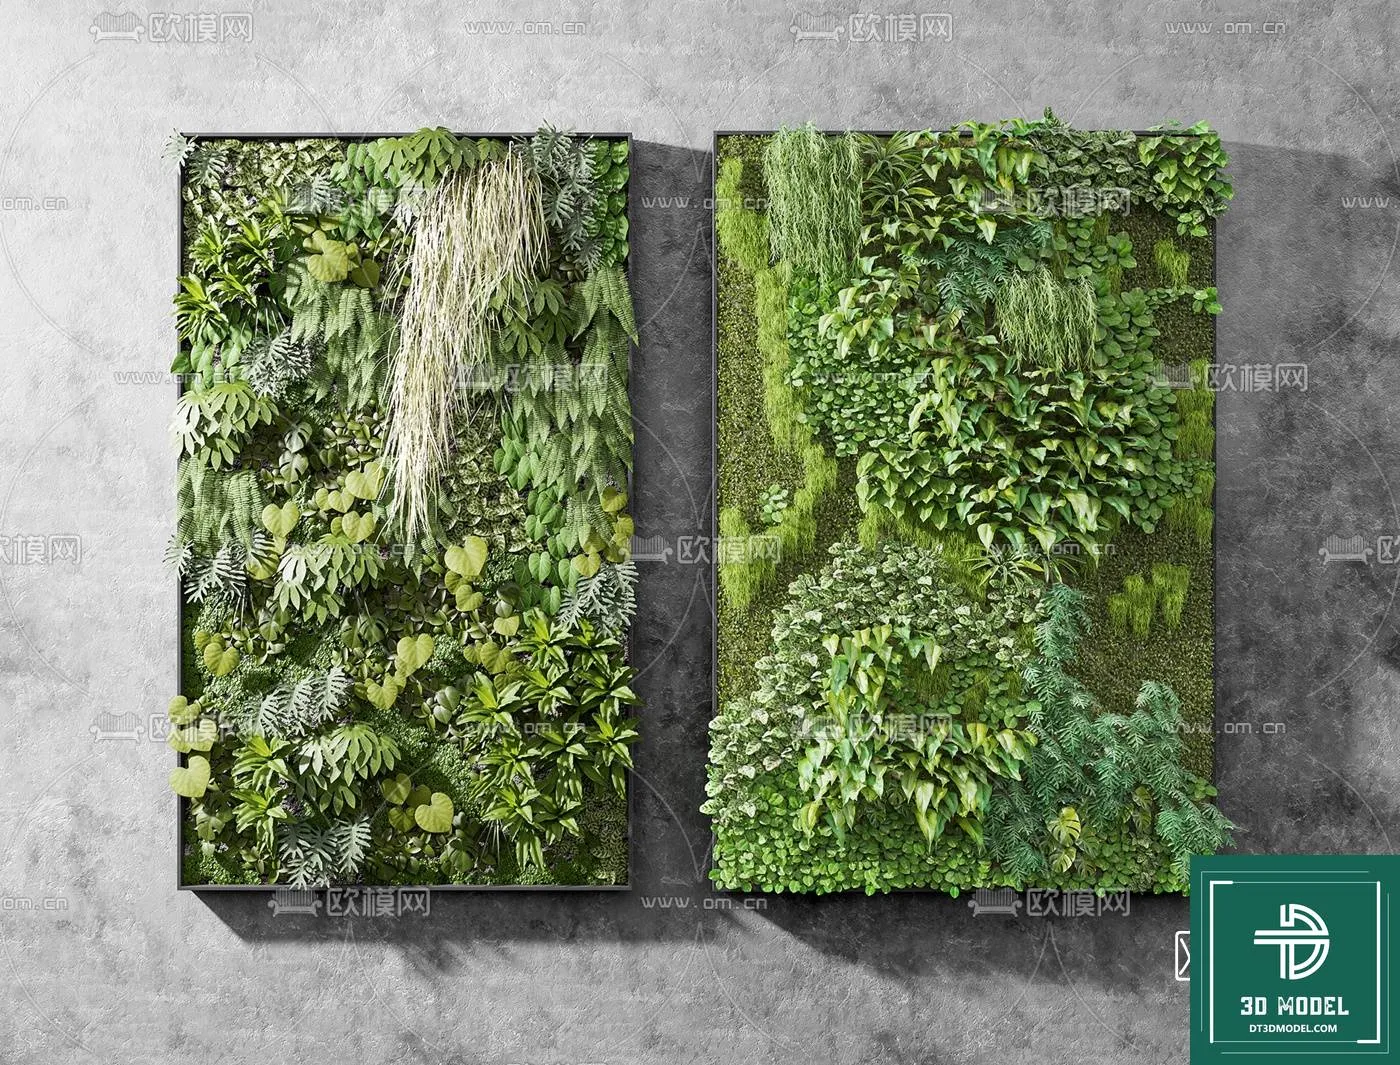 VERTICAL GARDEN – FITOWALL PLANT 3D MODEL – 010